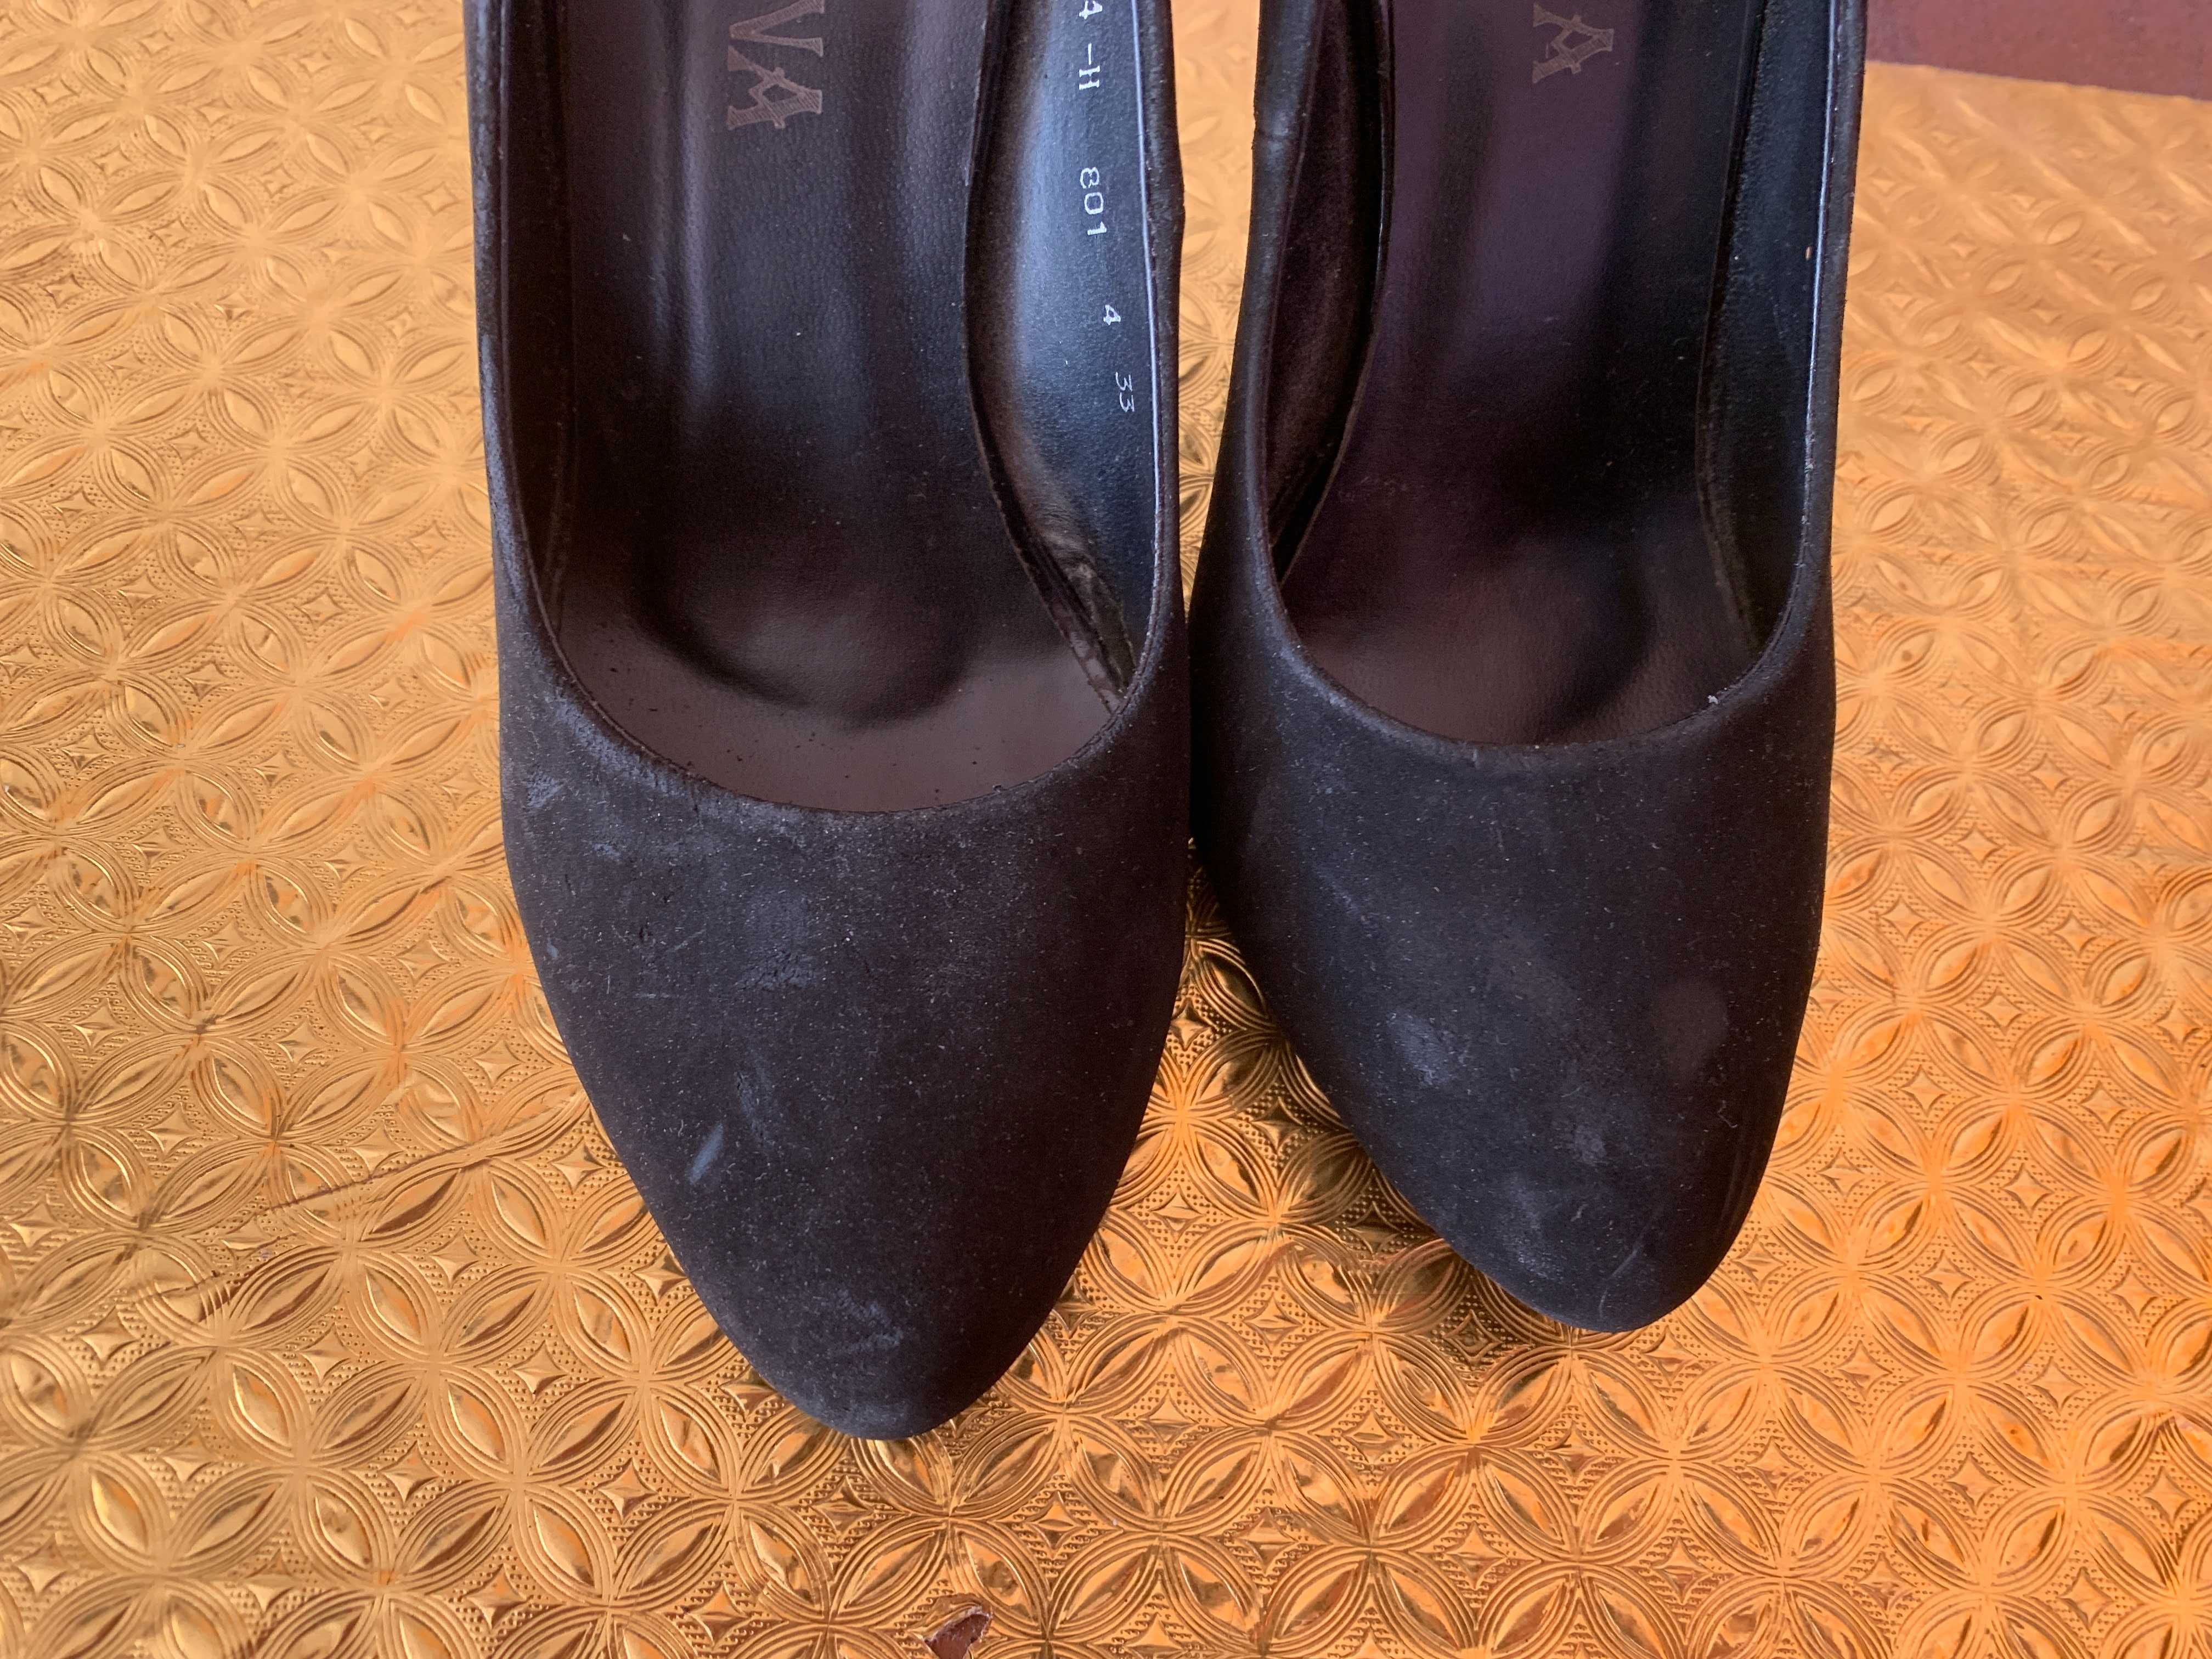 Продам туфли жен. из замши черного цвета на шпильке (сделано в Италии)